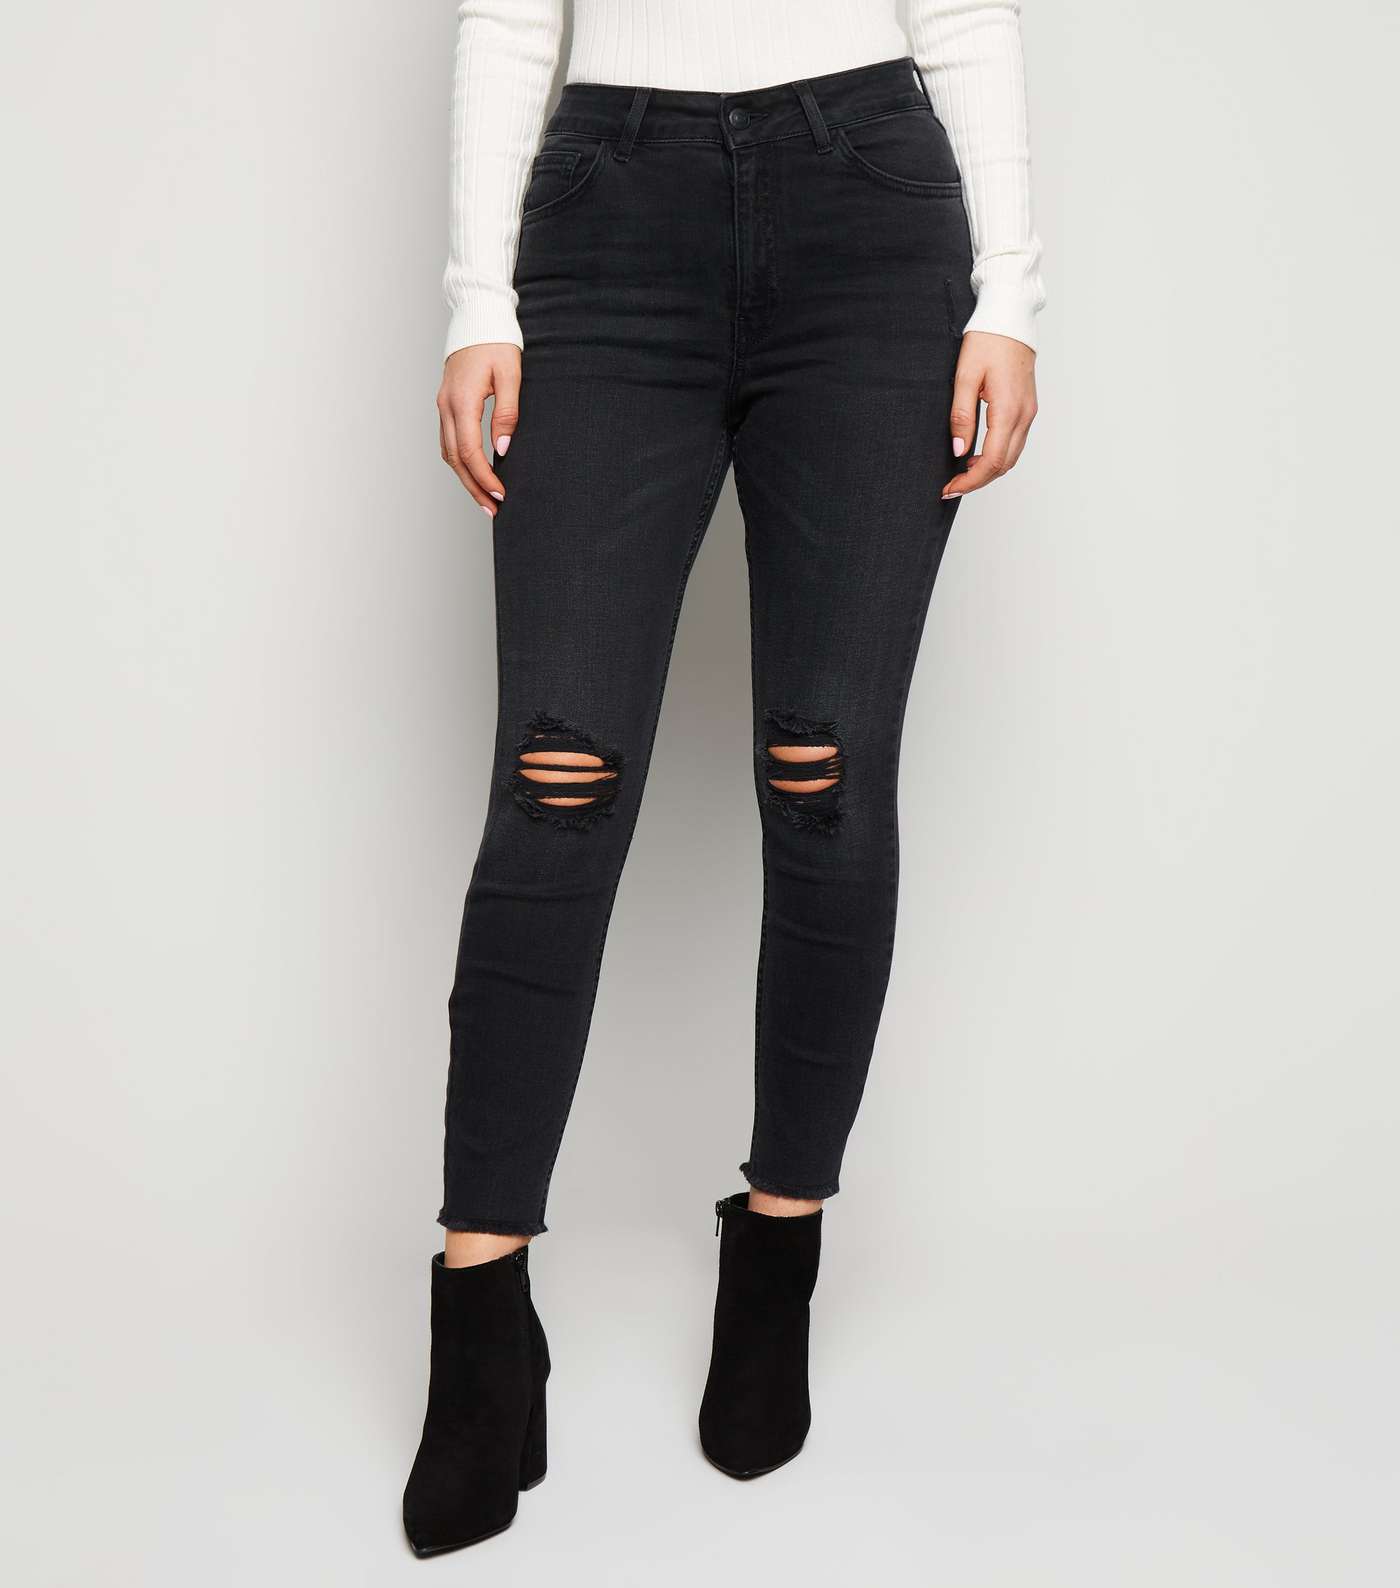 Petite Black 'Lift & Shape' High Rise Ripped Jeans Image 2